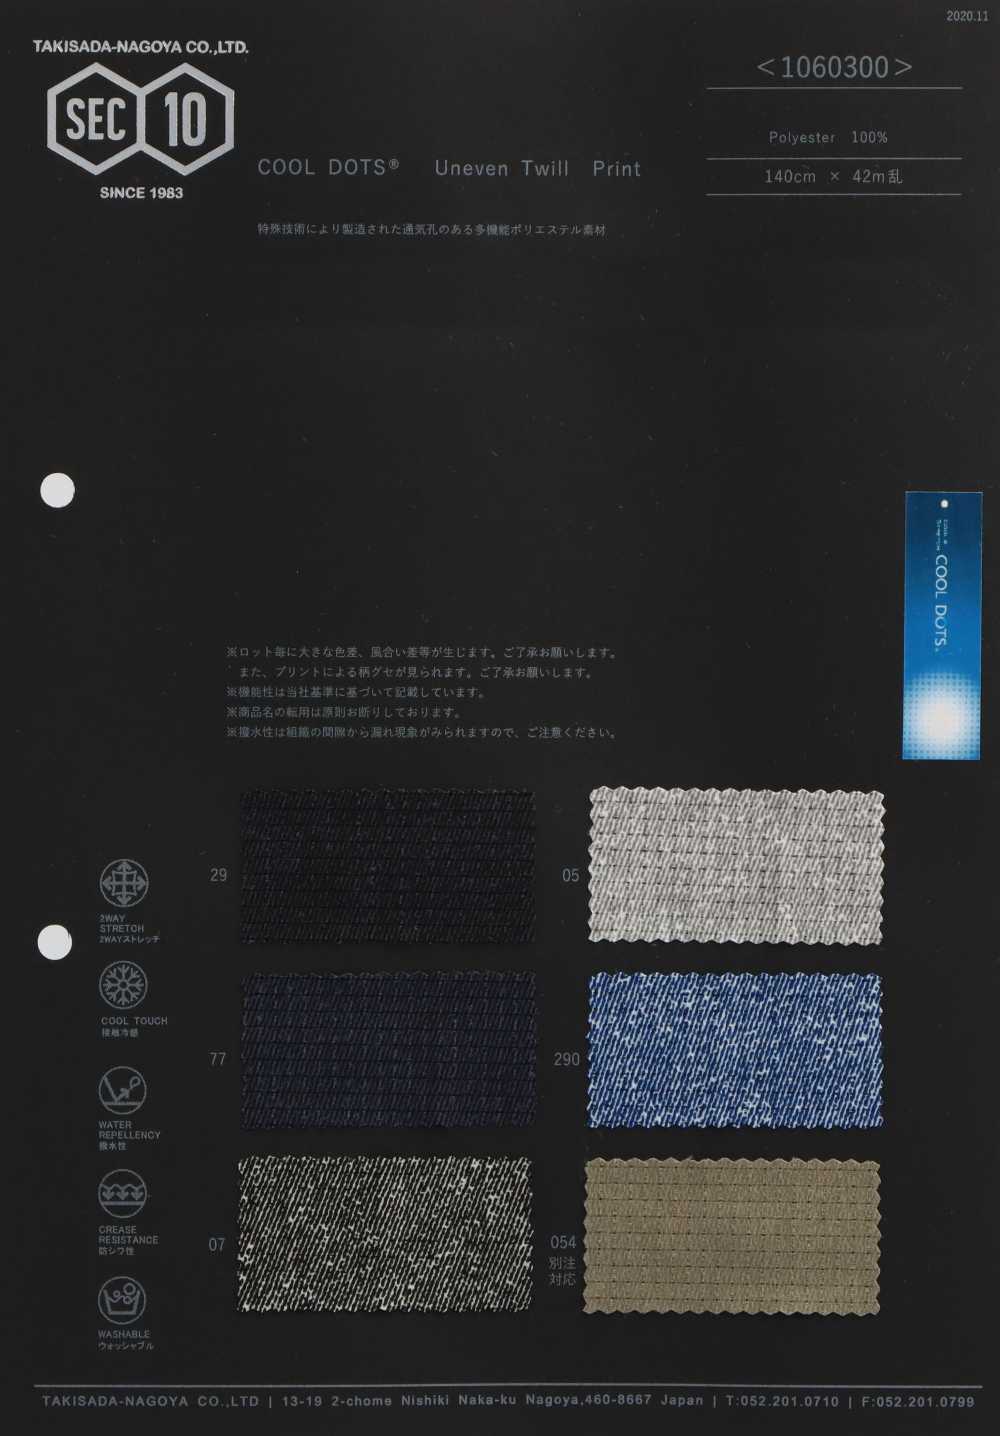 1060300 Estampado De Sarga COOLDOTS[Fabrica Textil] Takisada Nagoya